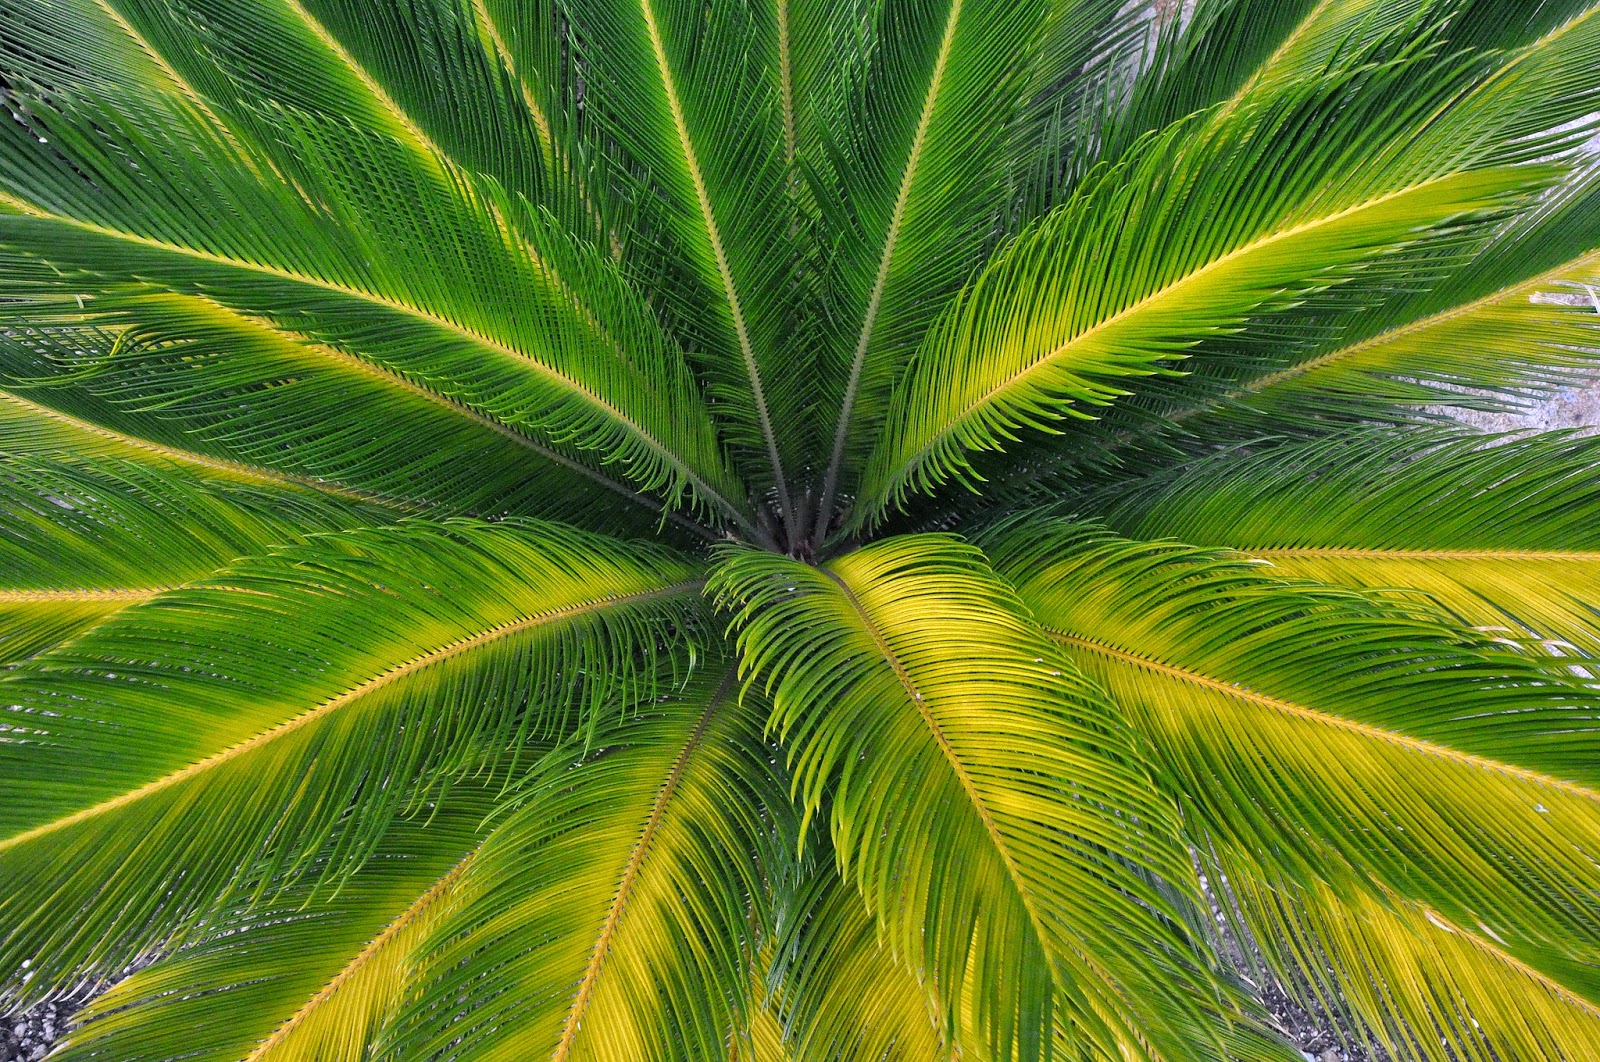 albero di cocco wallpaper hd,verde,natura,foglia,albero,palma